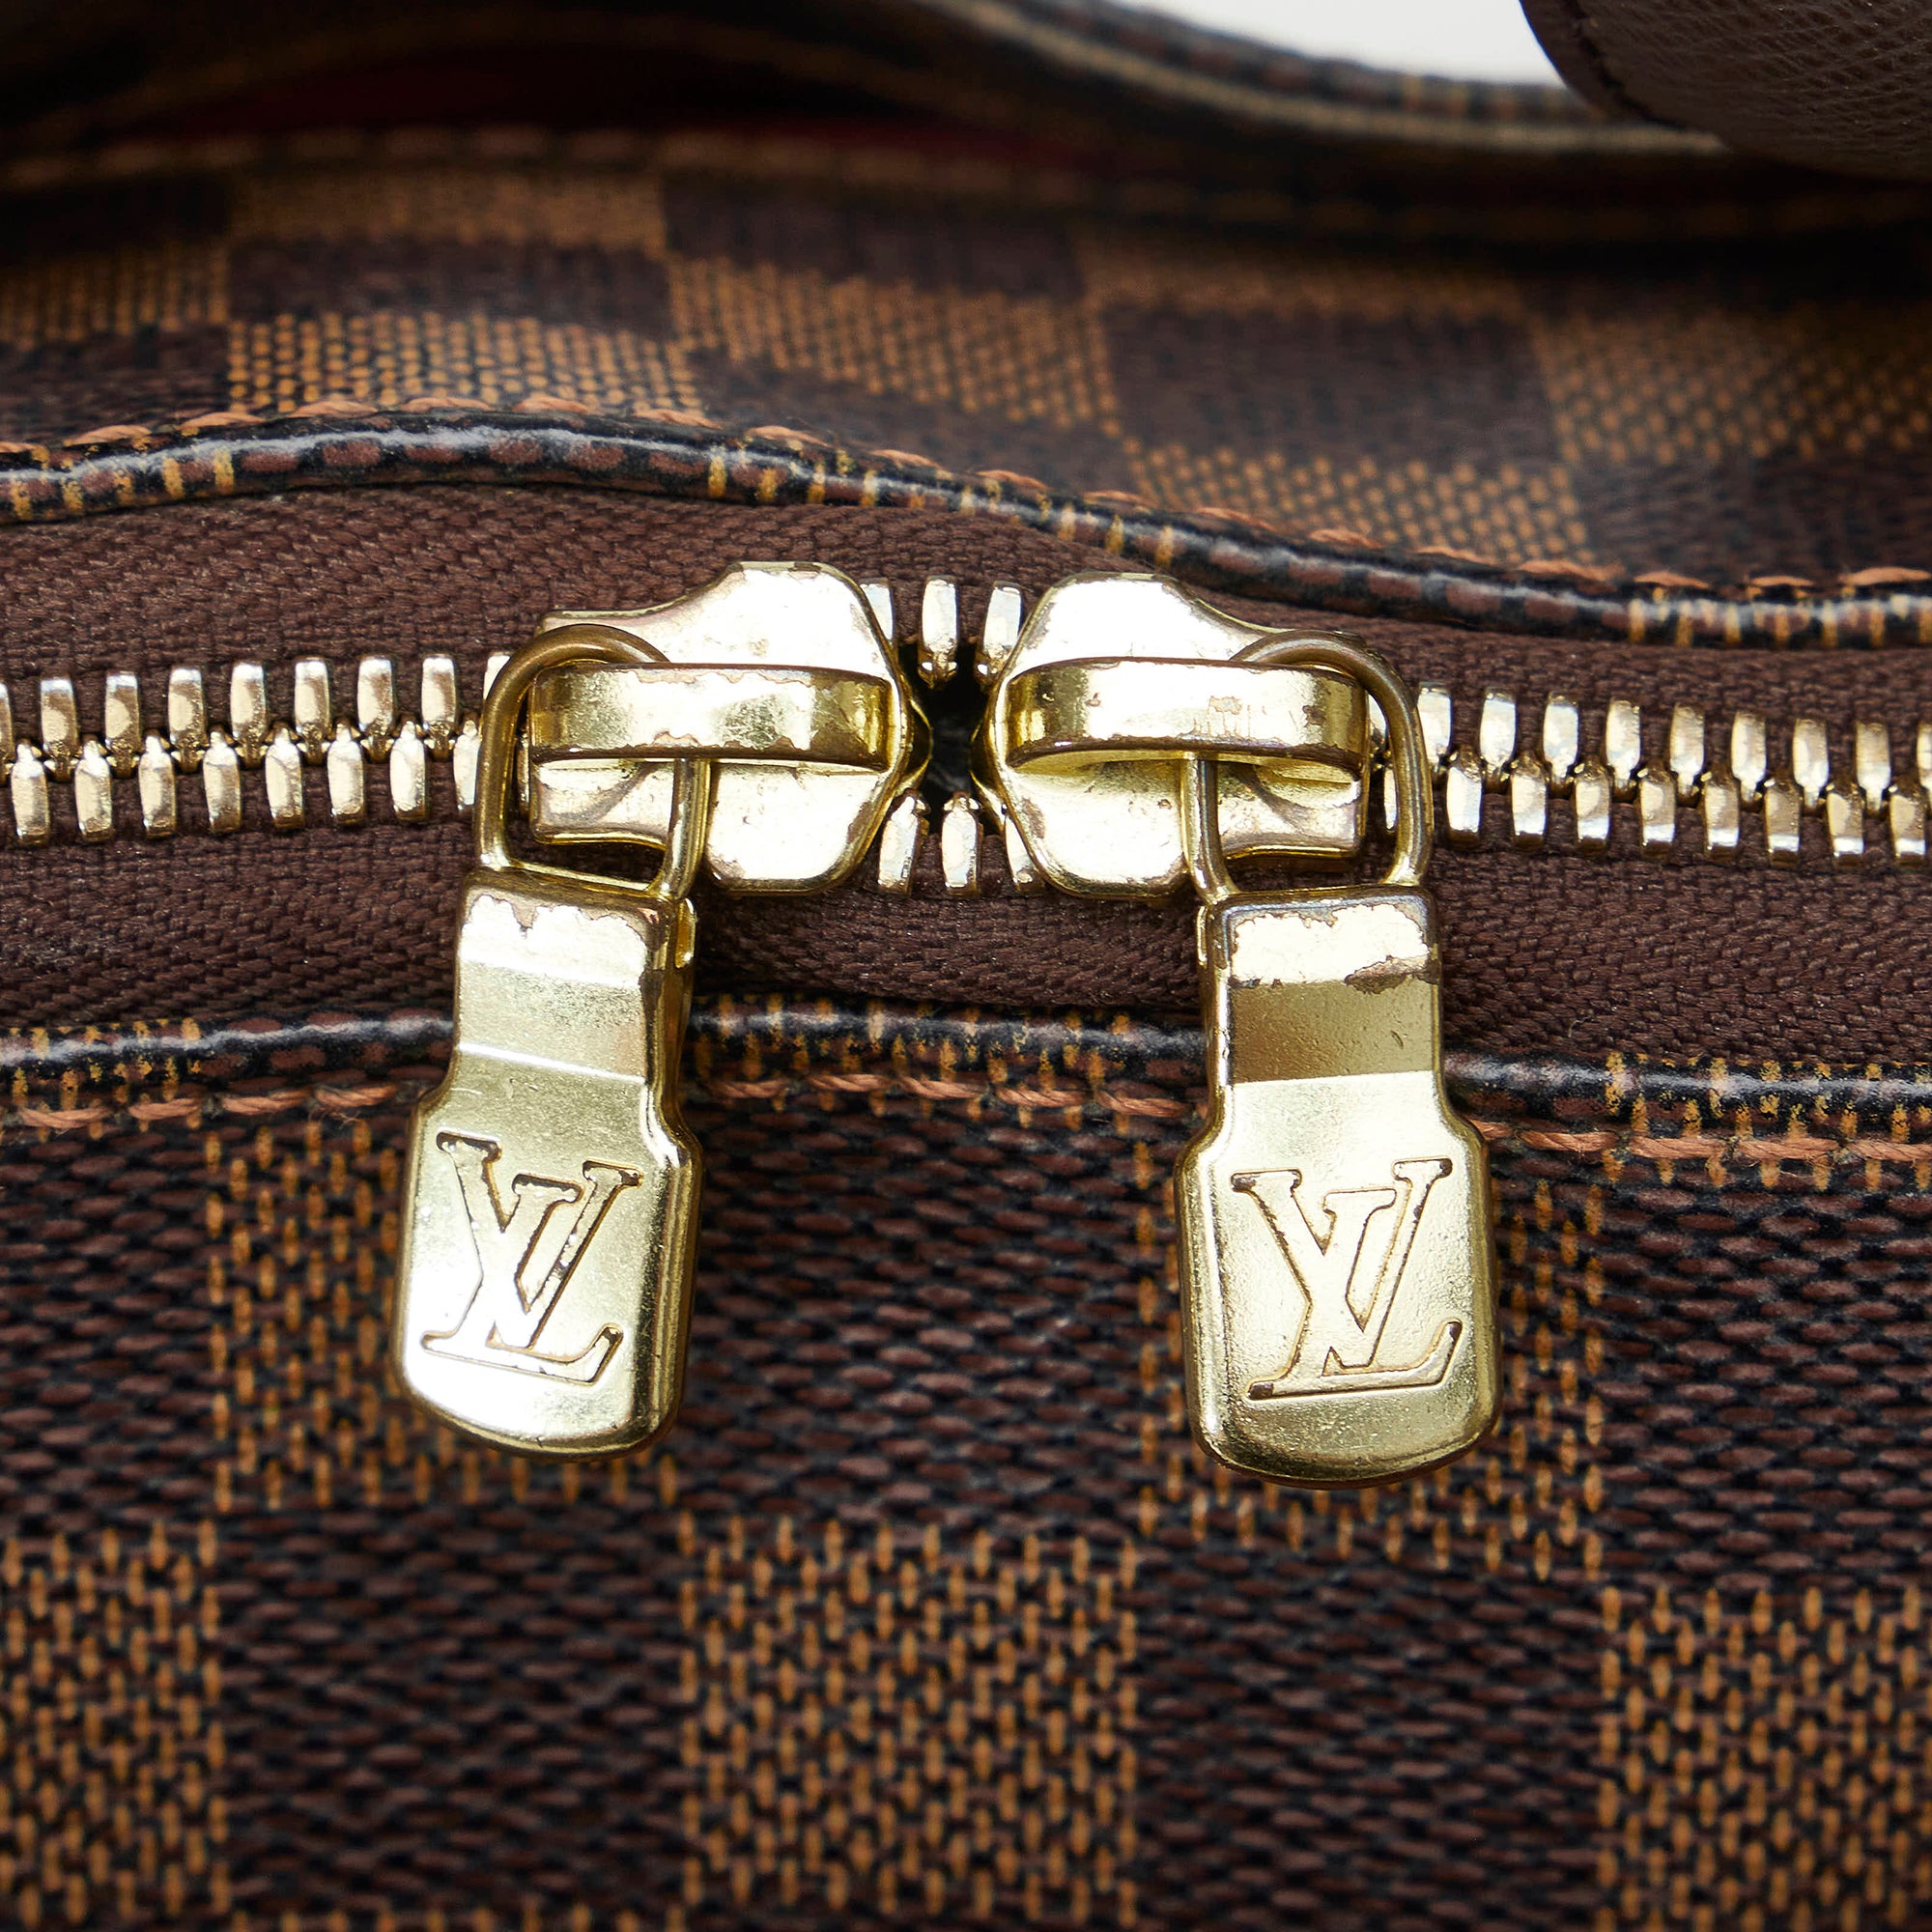 Louis Vuitton Brown Damier Ebene Canvas Belem Pm Top-handle Bag